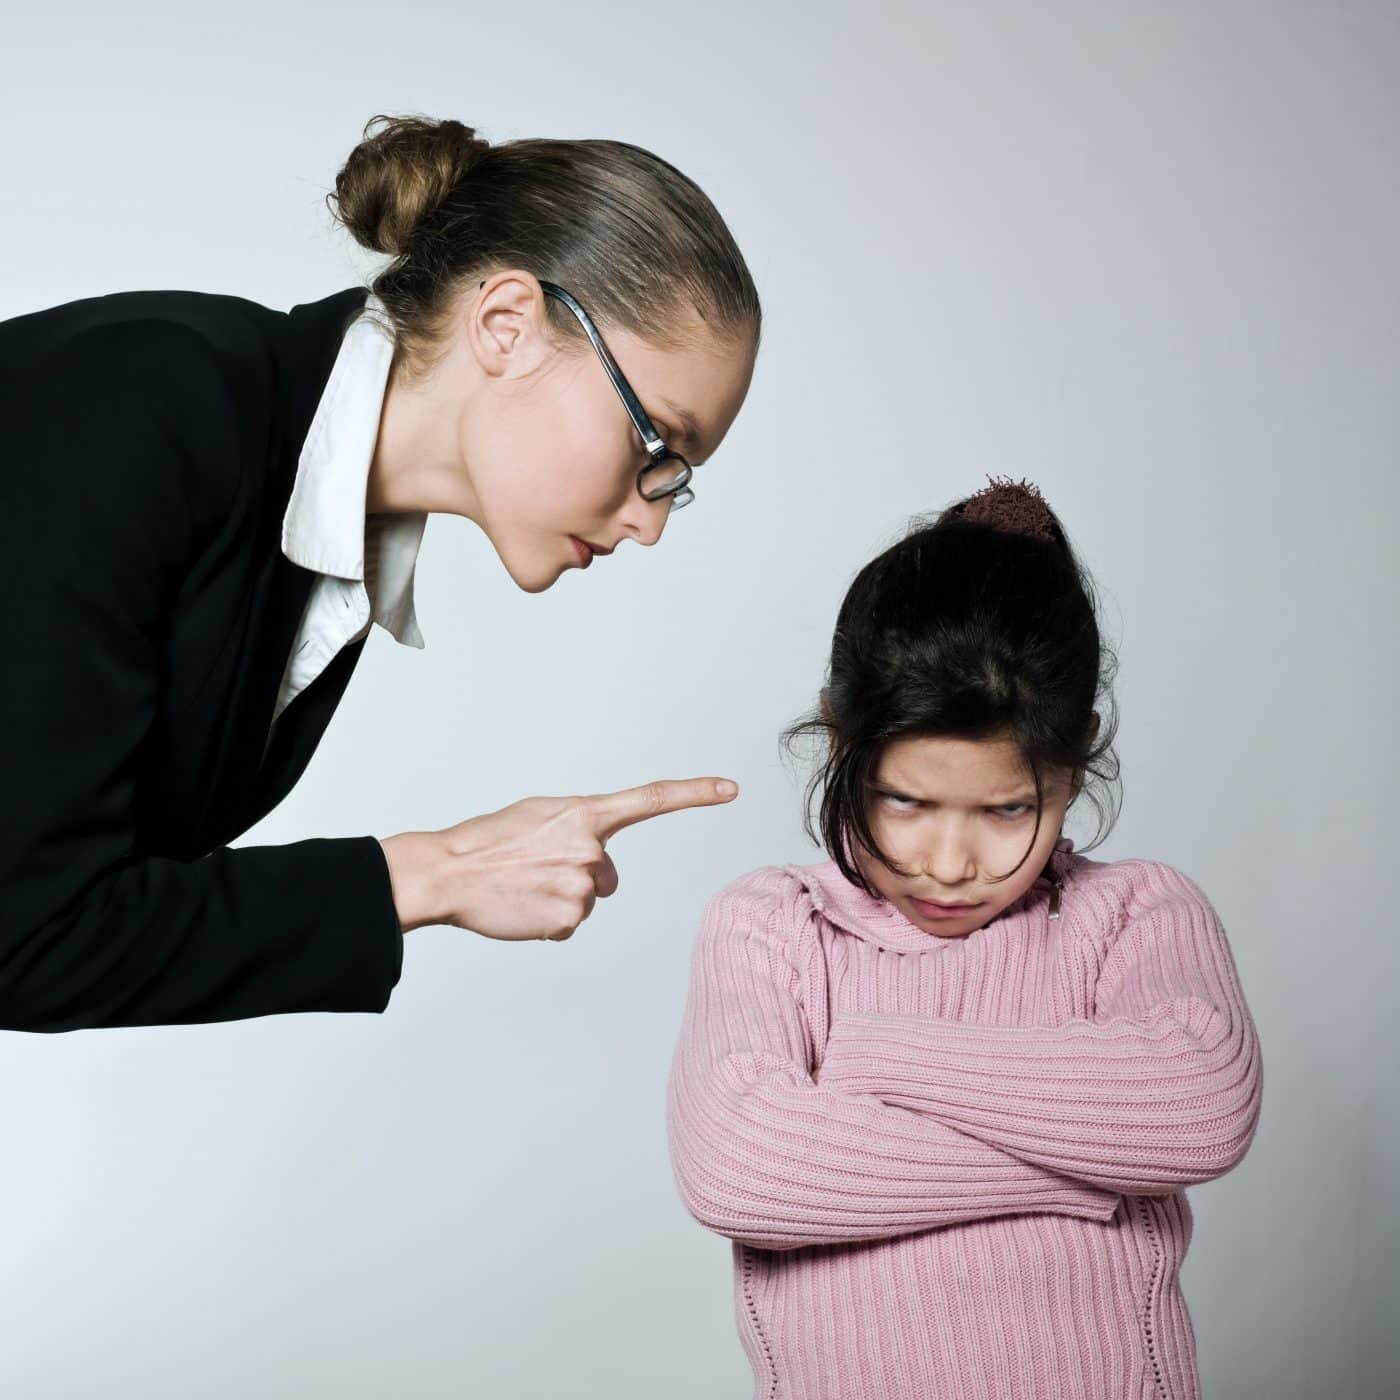 Конфликт в школе. Учитель ругает ребенка. Авторитарный стиль общения. Конфликт между учителем и учеником.